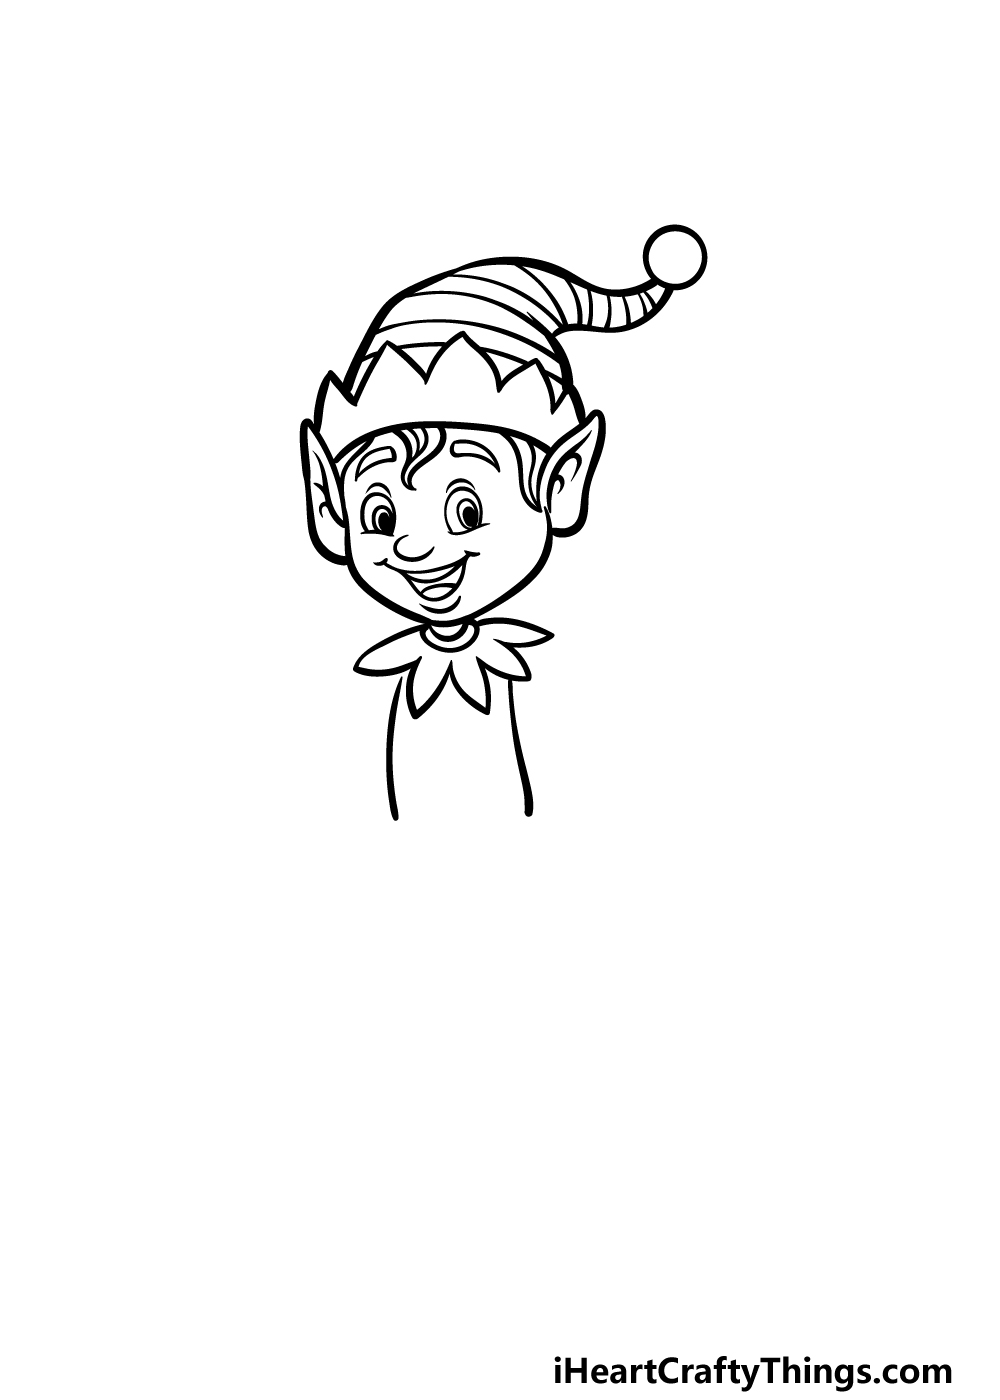 how to draw a cartoon elf step 3